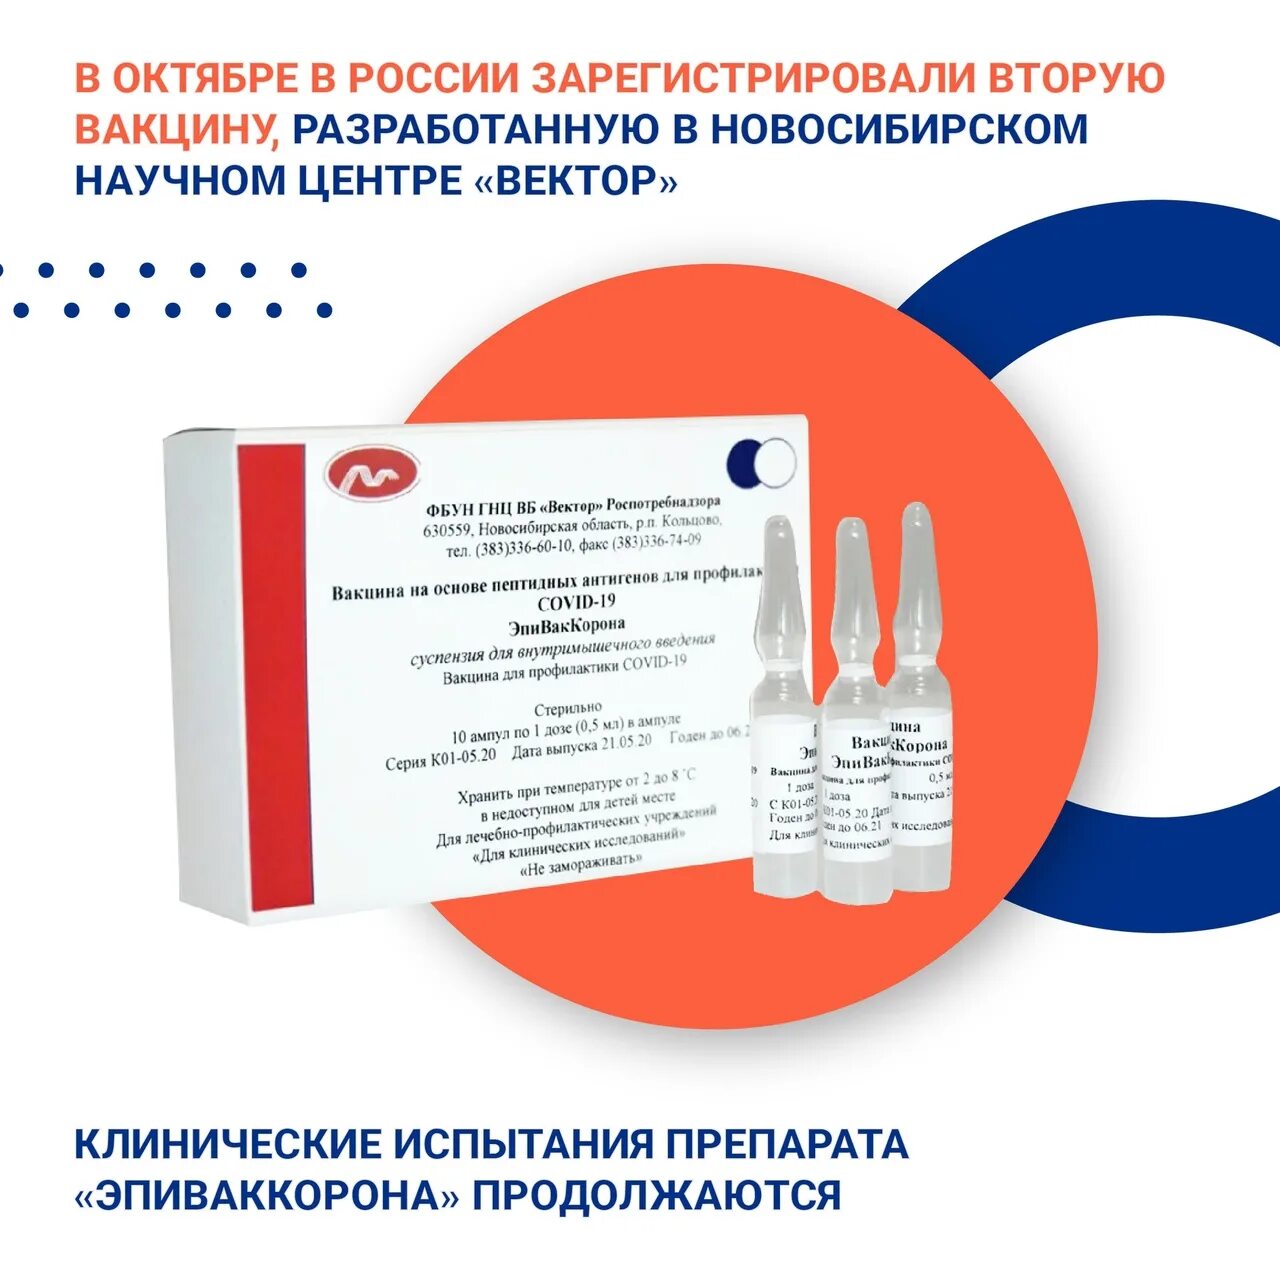 Где можно поставить прививку красноярск. Где сделать прививку. Однокомпонентная вакцина от коронавируса. Куда делают прививку от коронавируса. Название прививки от коронавируса в России.